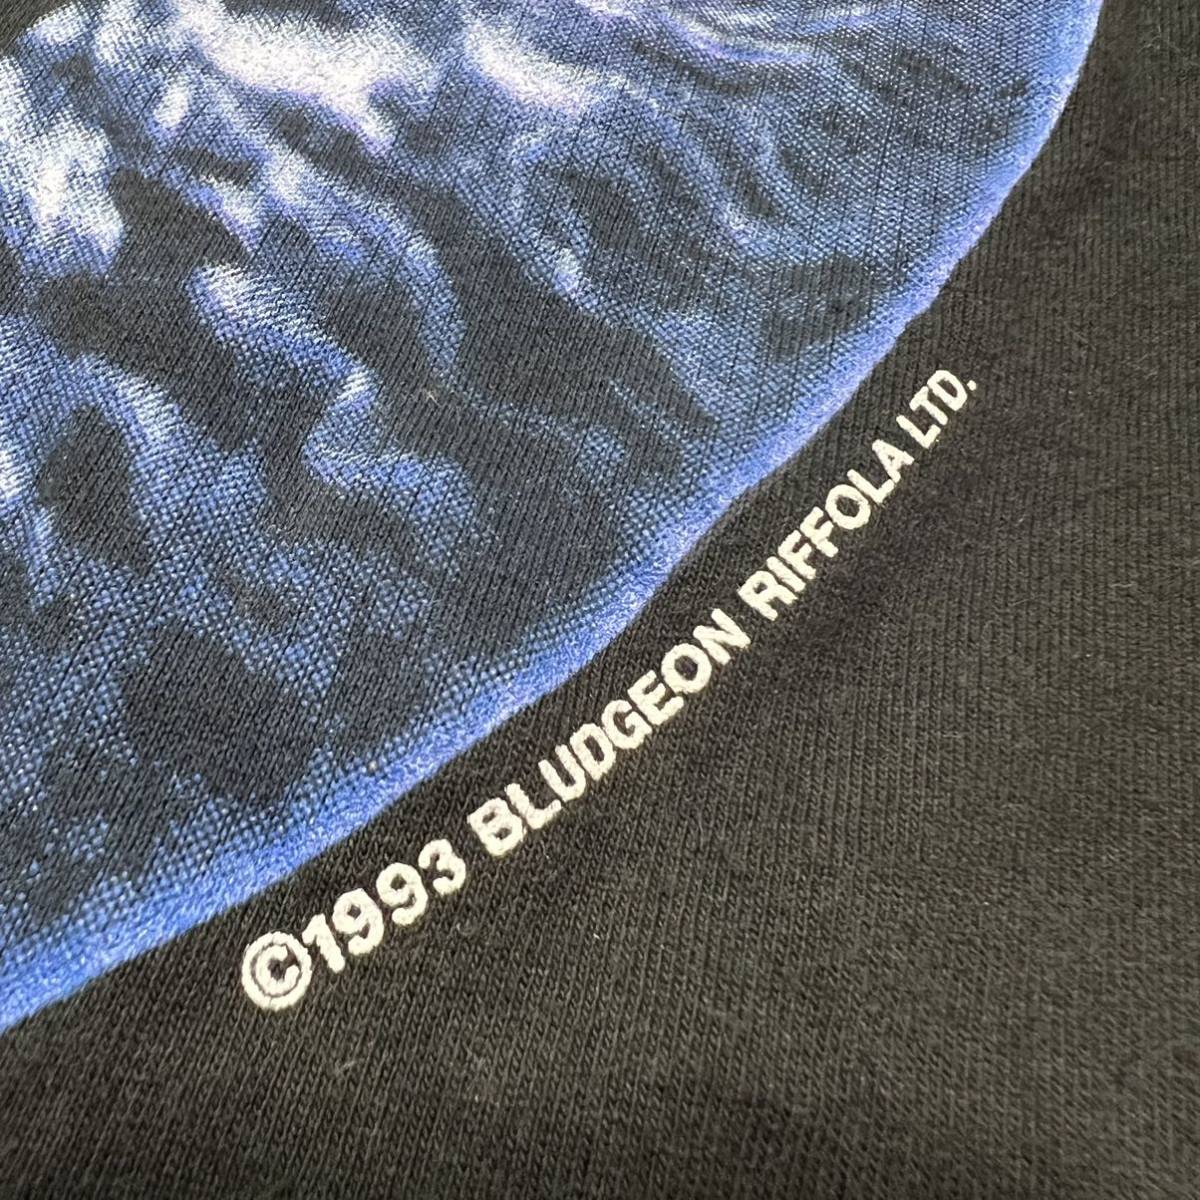 ★送料360円★ 90s USA製 DEF LEPPARD Tシャツ L ブラック デフレパード ロゴ 1993 ビンテージ メンズ ヴィンテージ バンT バンド R-5611_画像6